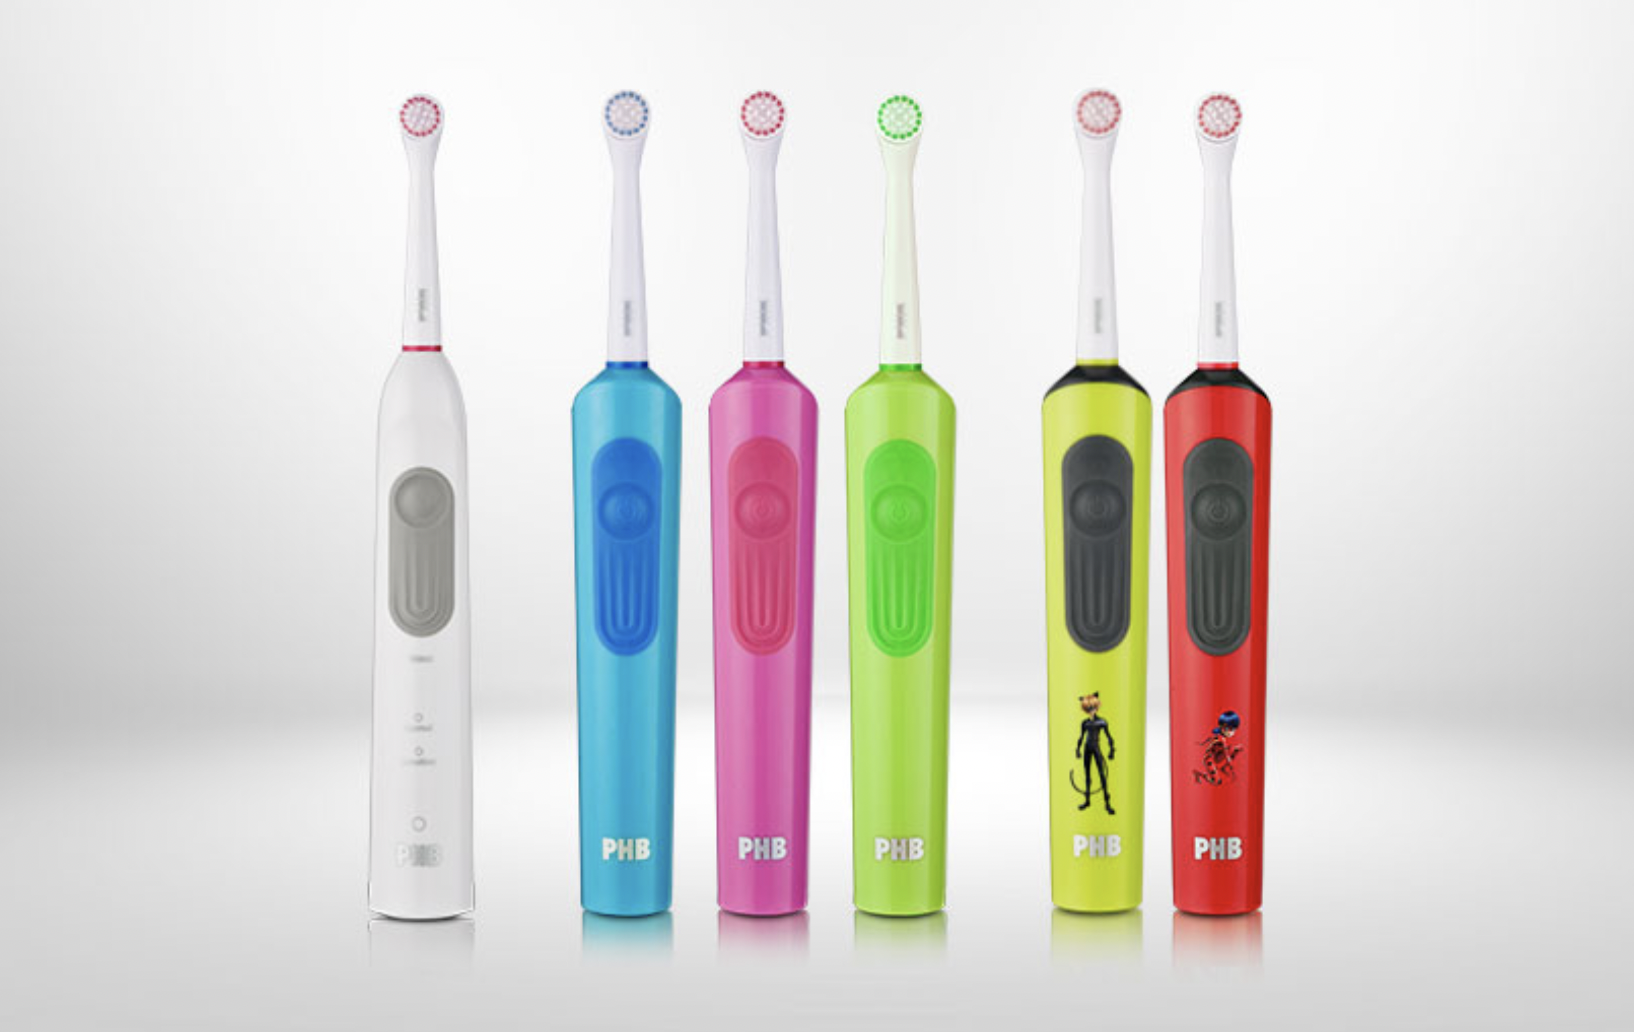 El cepillo eléctrico ha sido toda una de las mejoras técnicas actuales en tu higiene bucal porque te ayuda a limpiar tus dientes de manera más eficaz, consiguiendo eliminar más placa y los restos de comida escondidos entre tus dientes